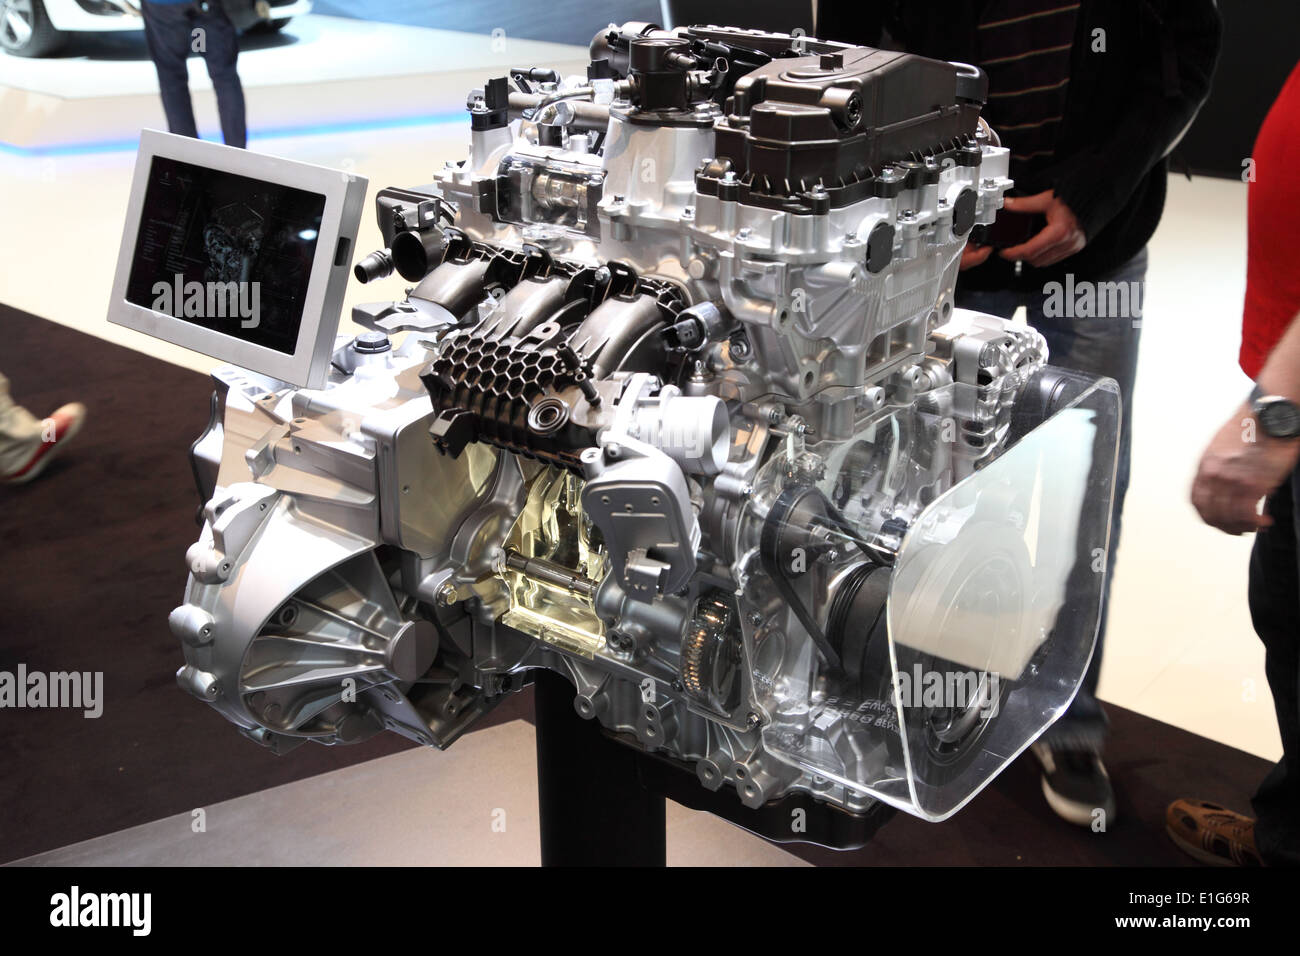 Neue Peugeot e-THP drei-Zylinder-Motor auf der AMI - Auto Mobil International Trade Fair am 1. Juni 2014 in Leipzig, Sachsen, G Stockfoto